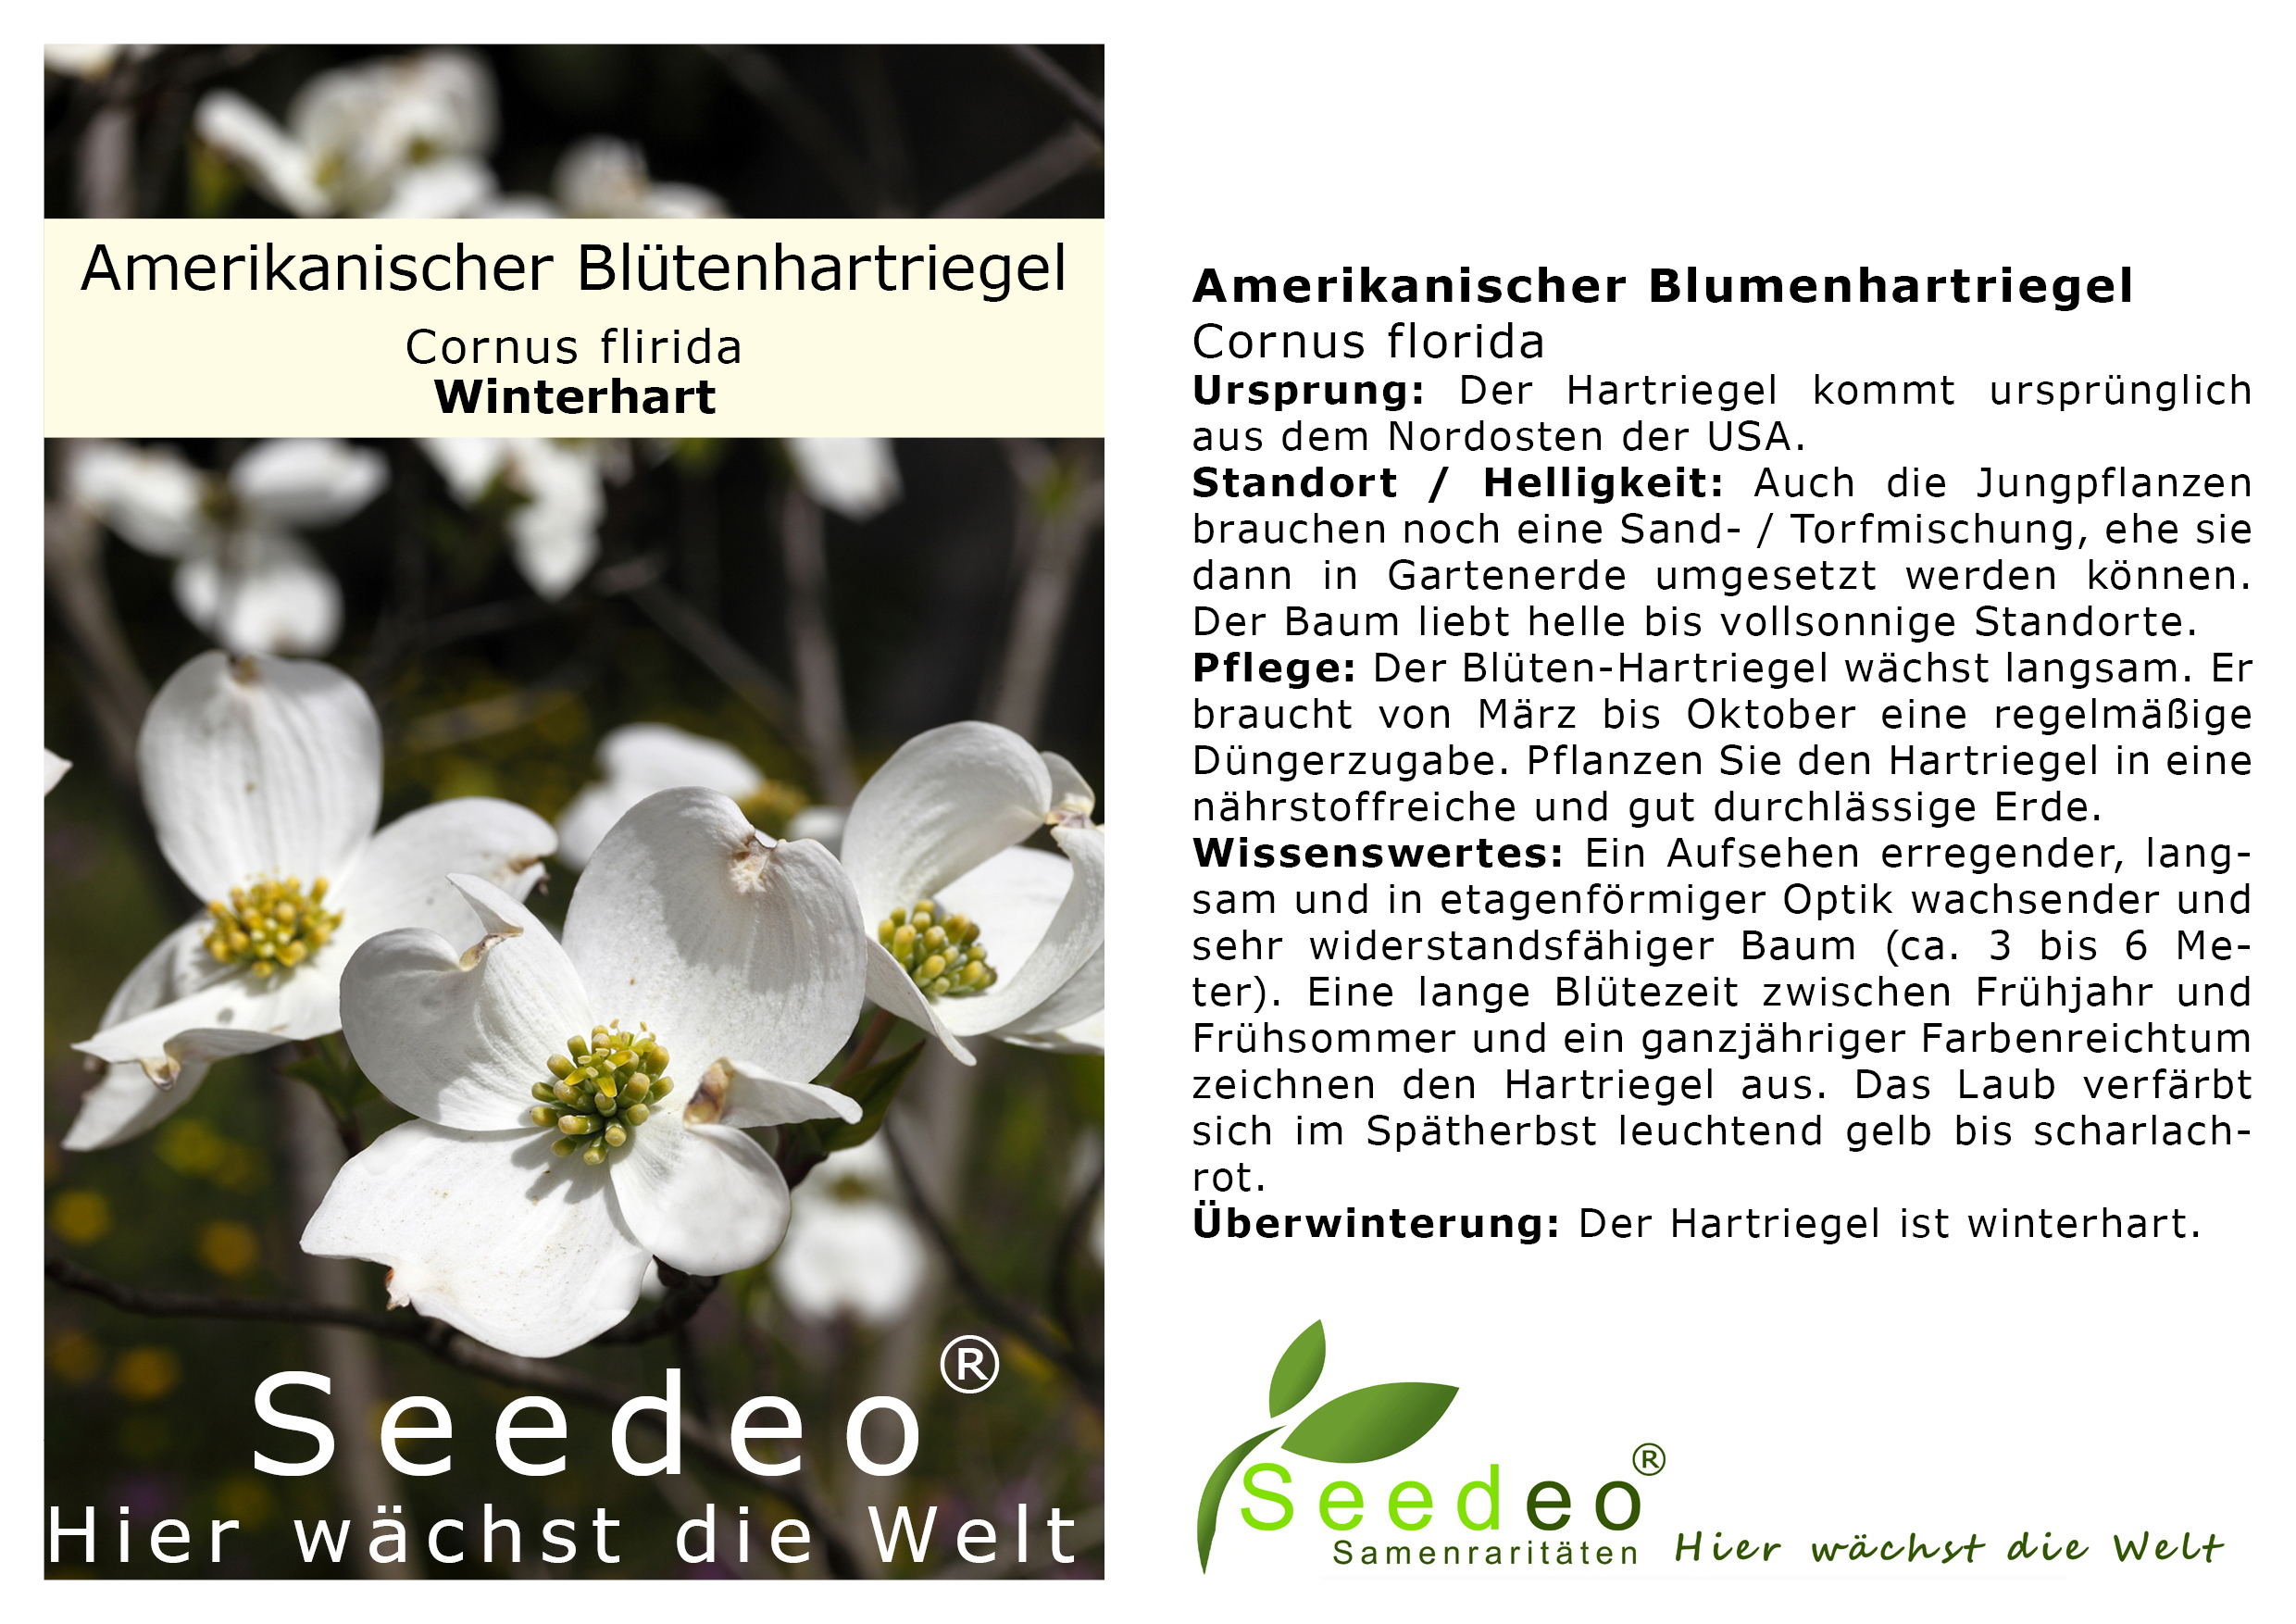 Seedeo®  Amerikanischer Blumenhartriegel (Cornus florida) ca 60 cm - 80 cm hoch